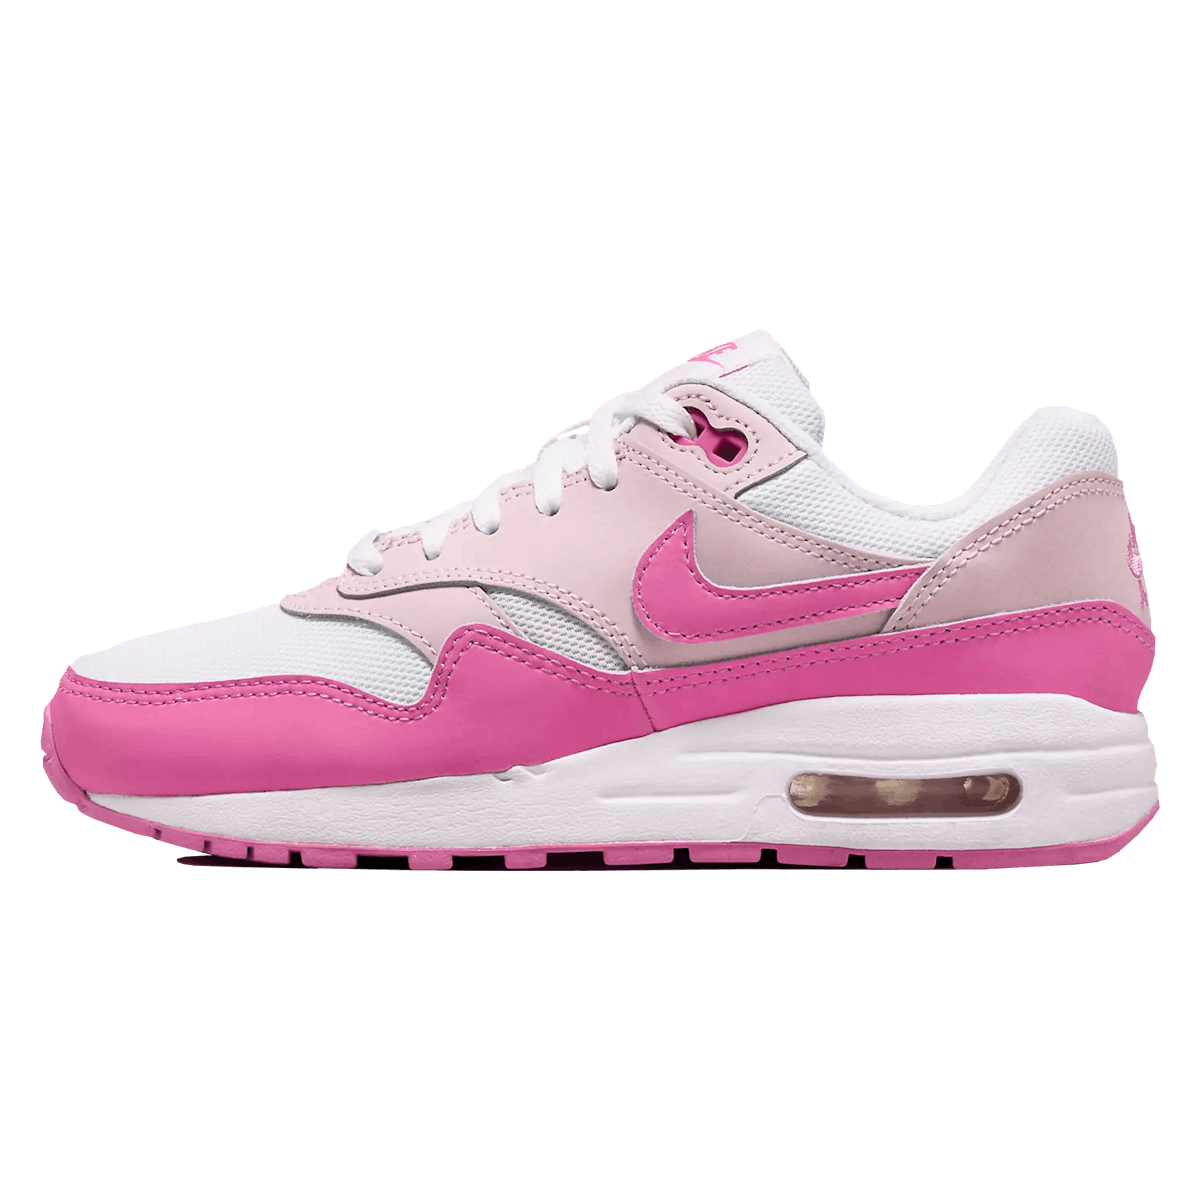 Nike Air Max 1 GS "Pink White"